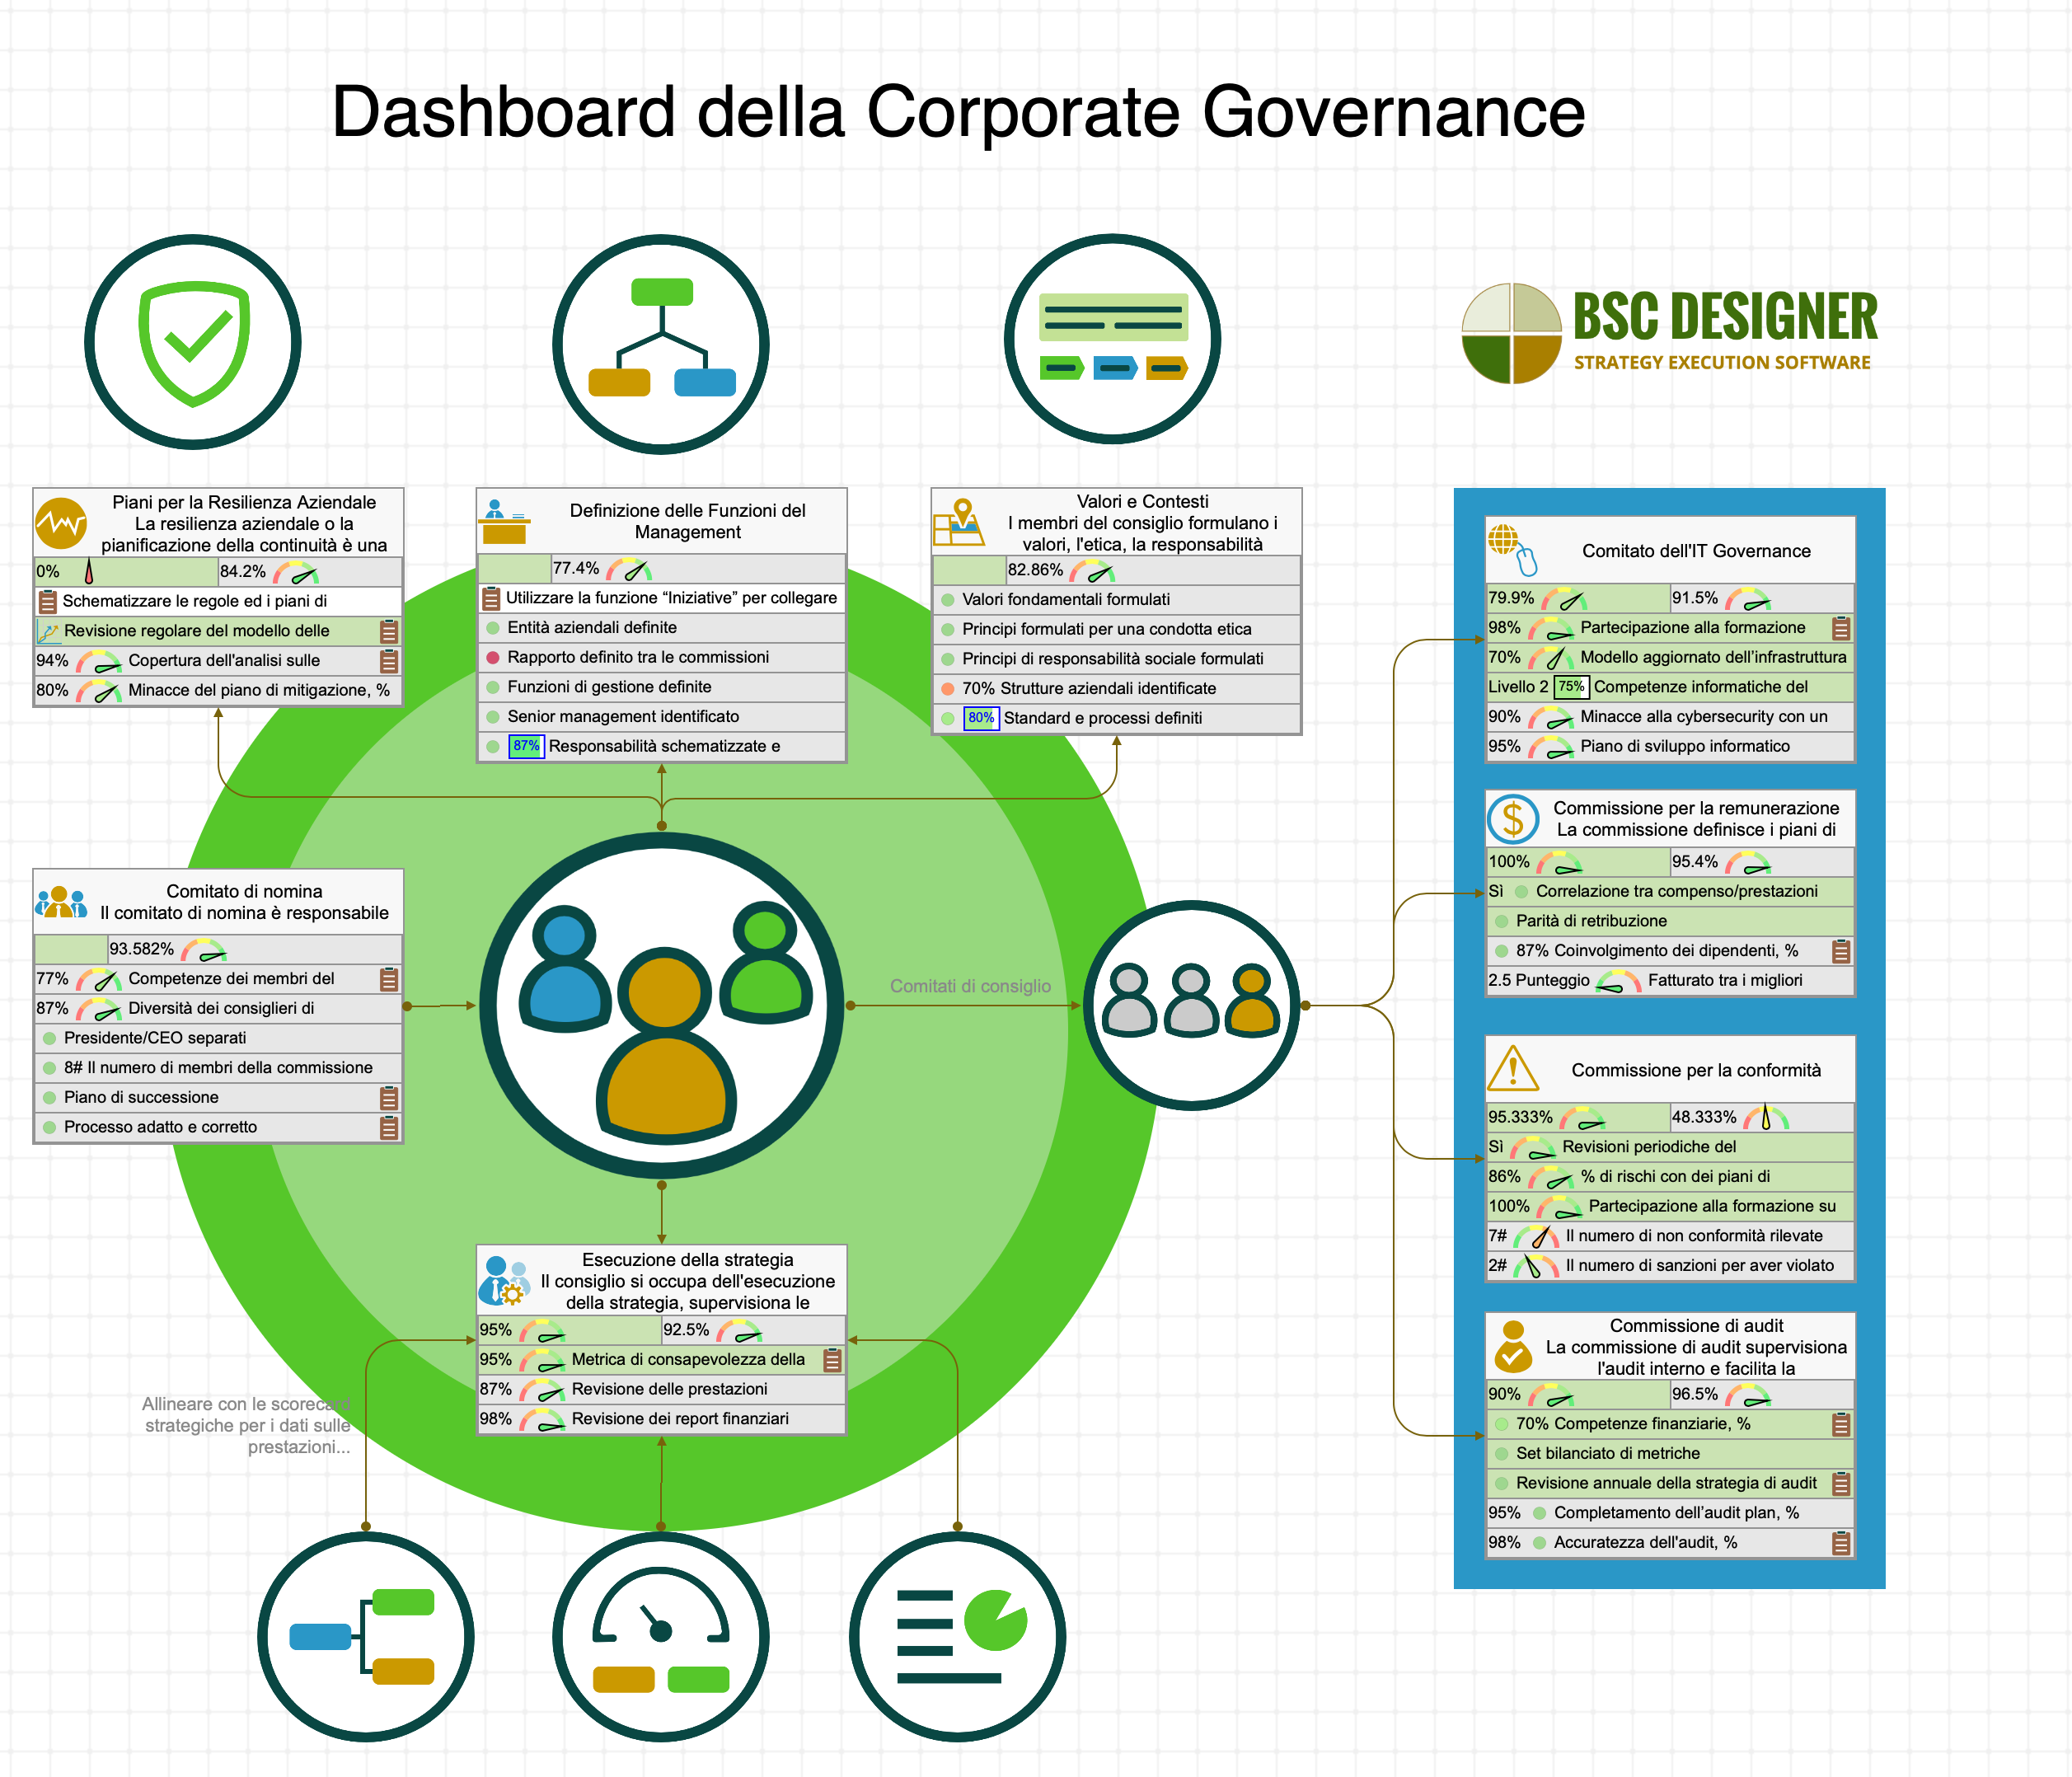 Dashboard della Corporate Governance con i KPI